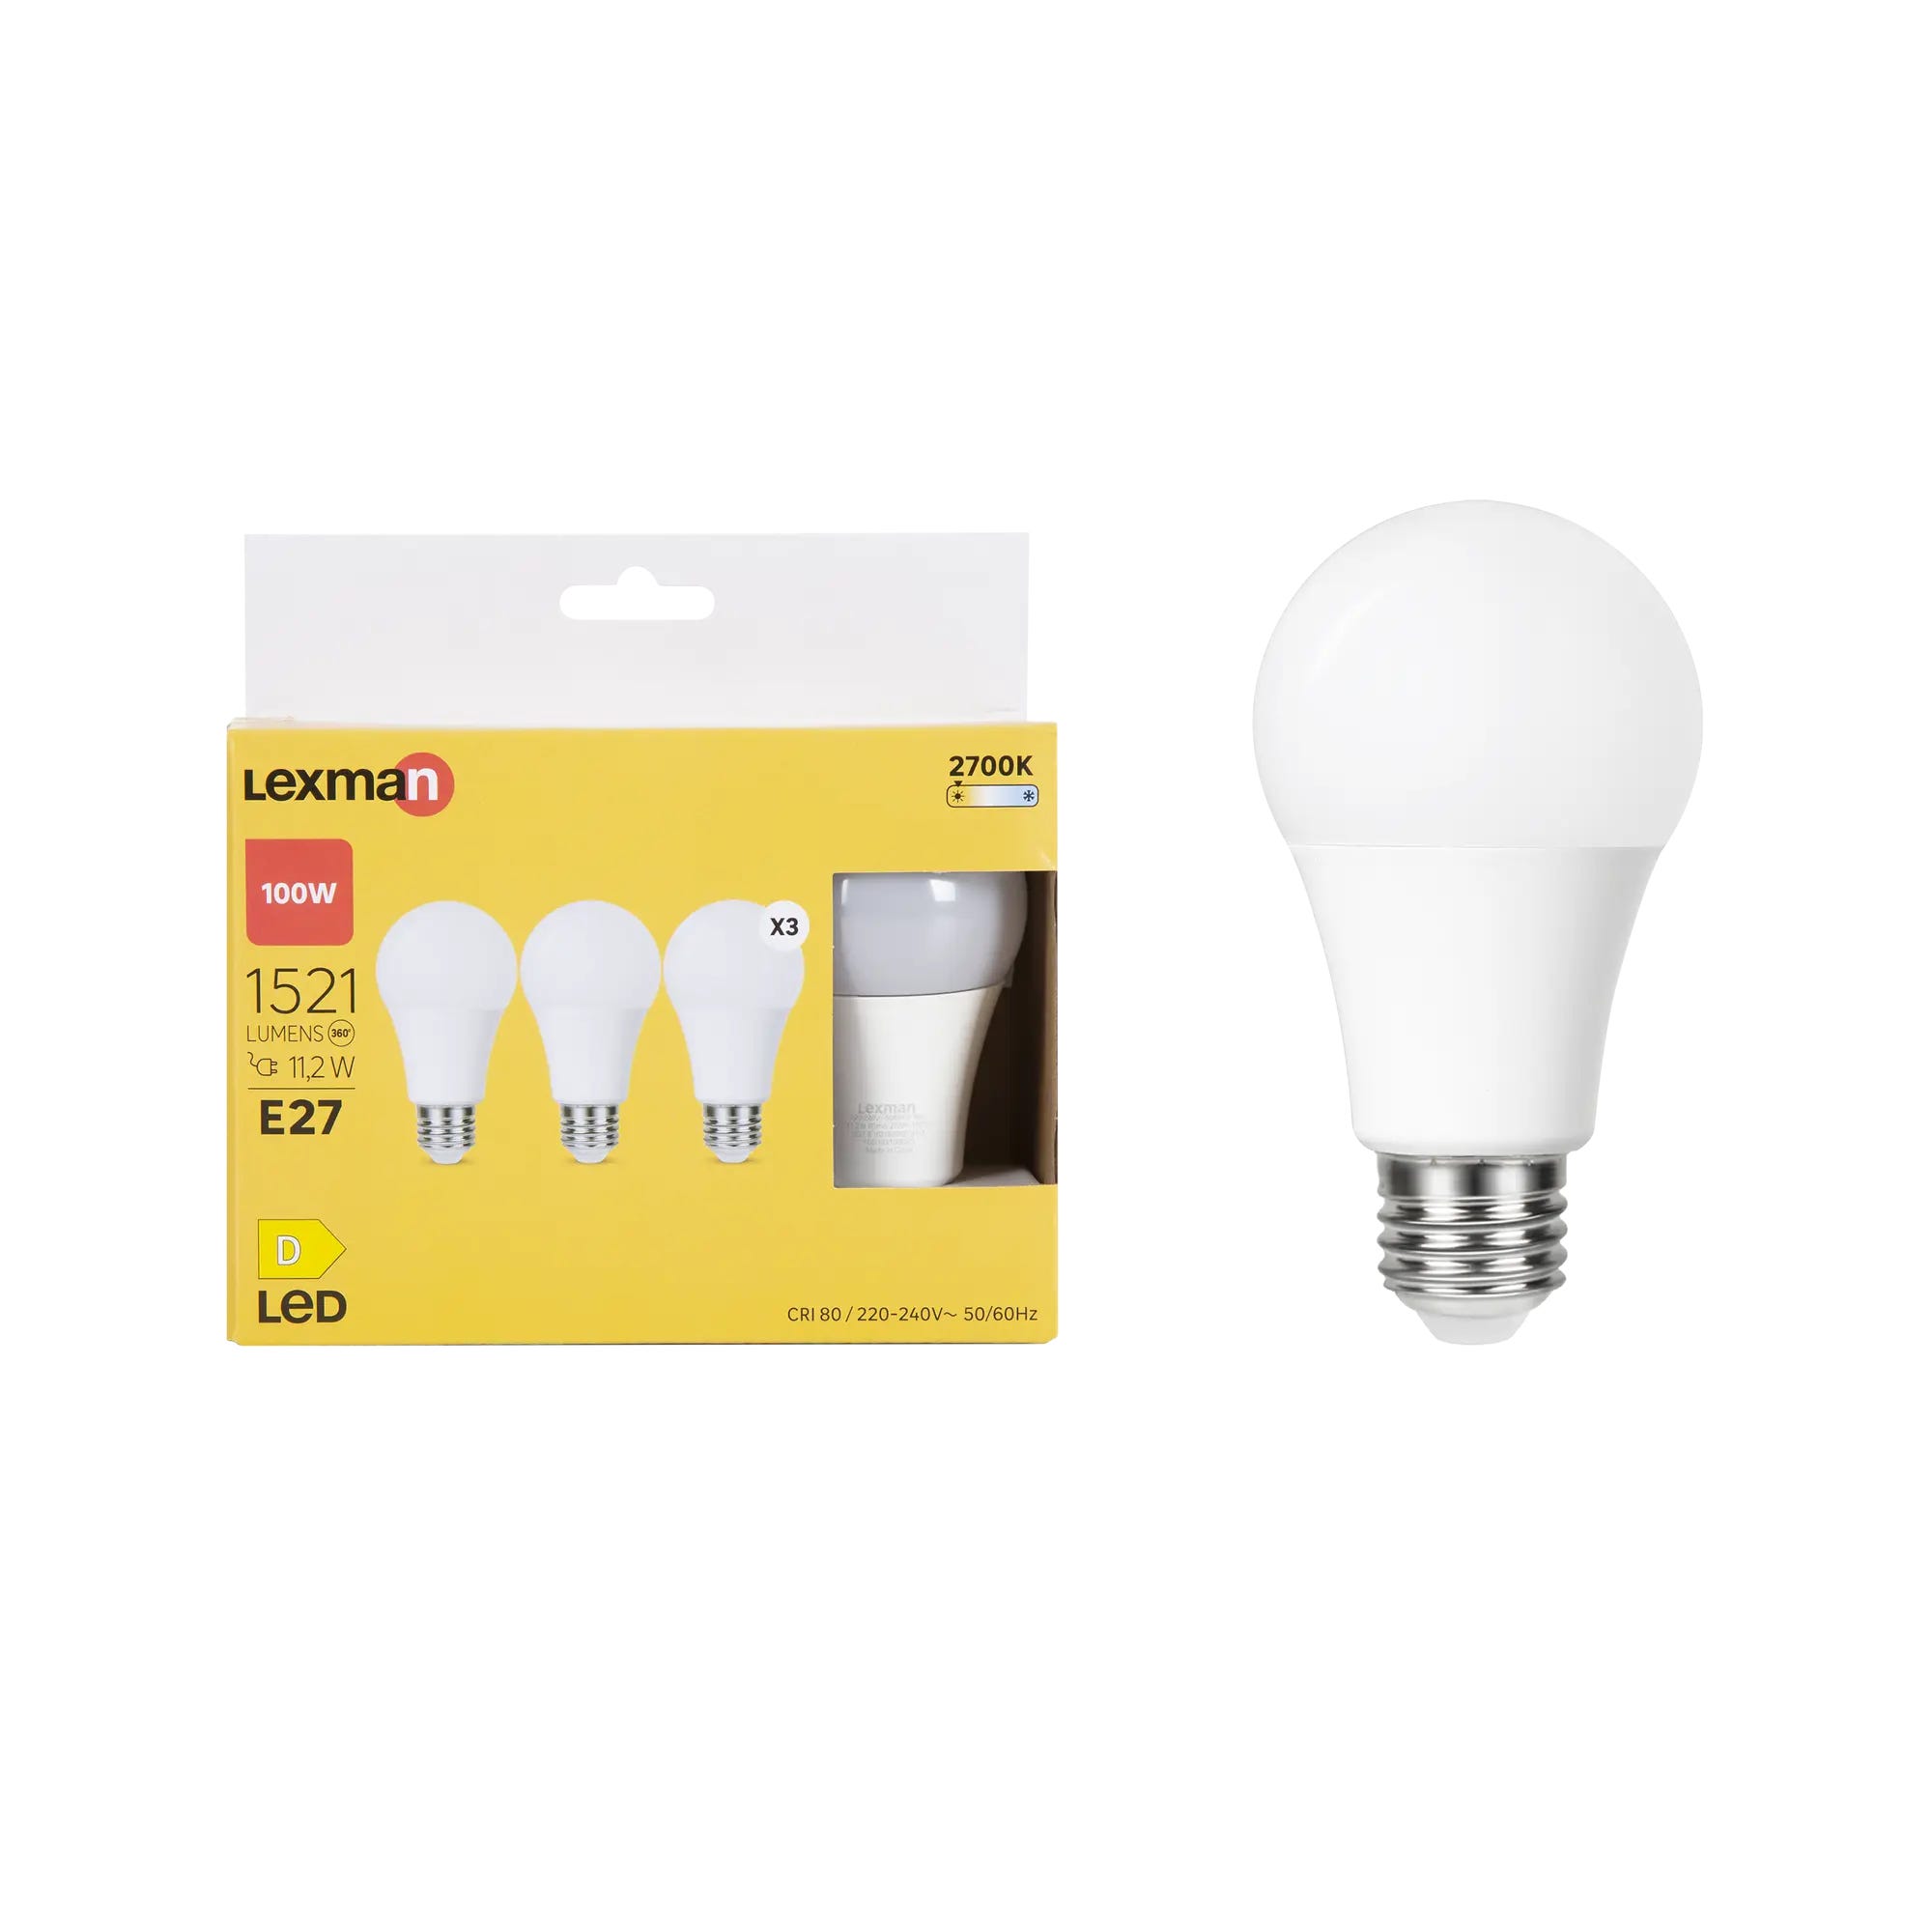 Lot de 3 ampoules led, plastique, E27, 1521lm = 100W, blanc chaud, LEXMAN